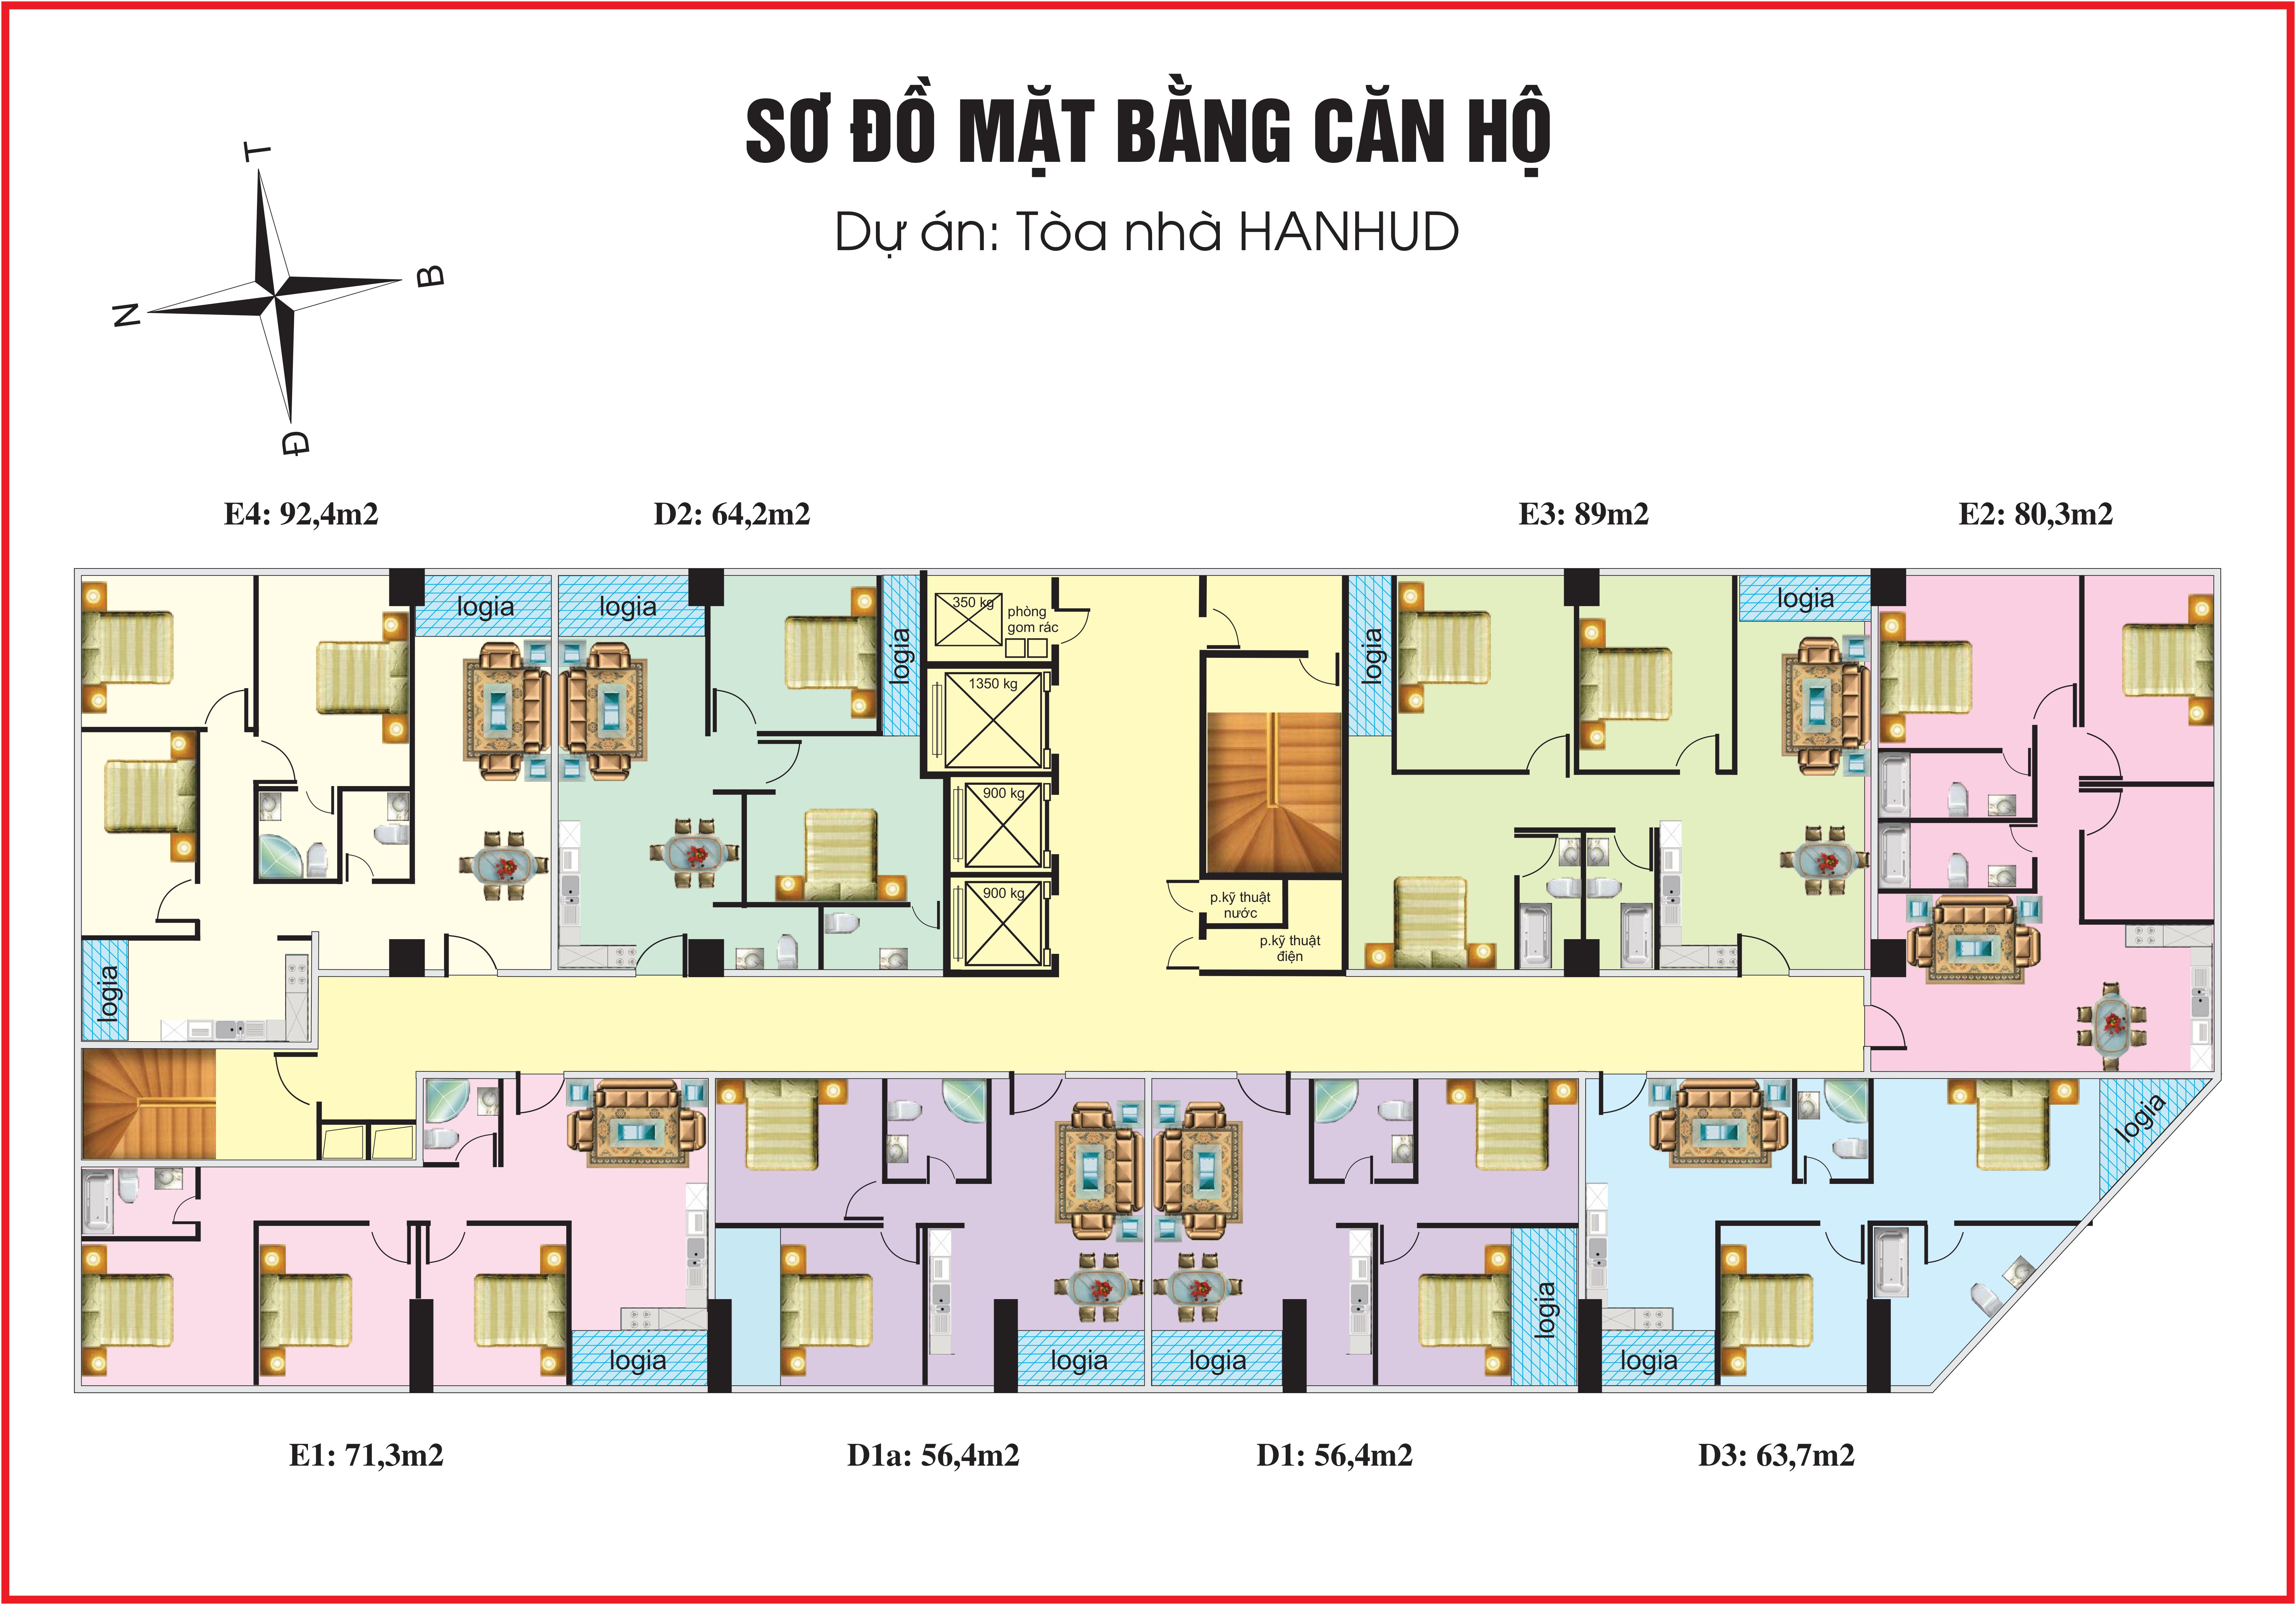 Chung cư HANHUD 234 Hoàng Quốc Việt - Mặt bằng căn hộ tầng 8 - 17